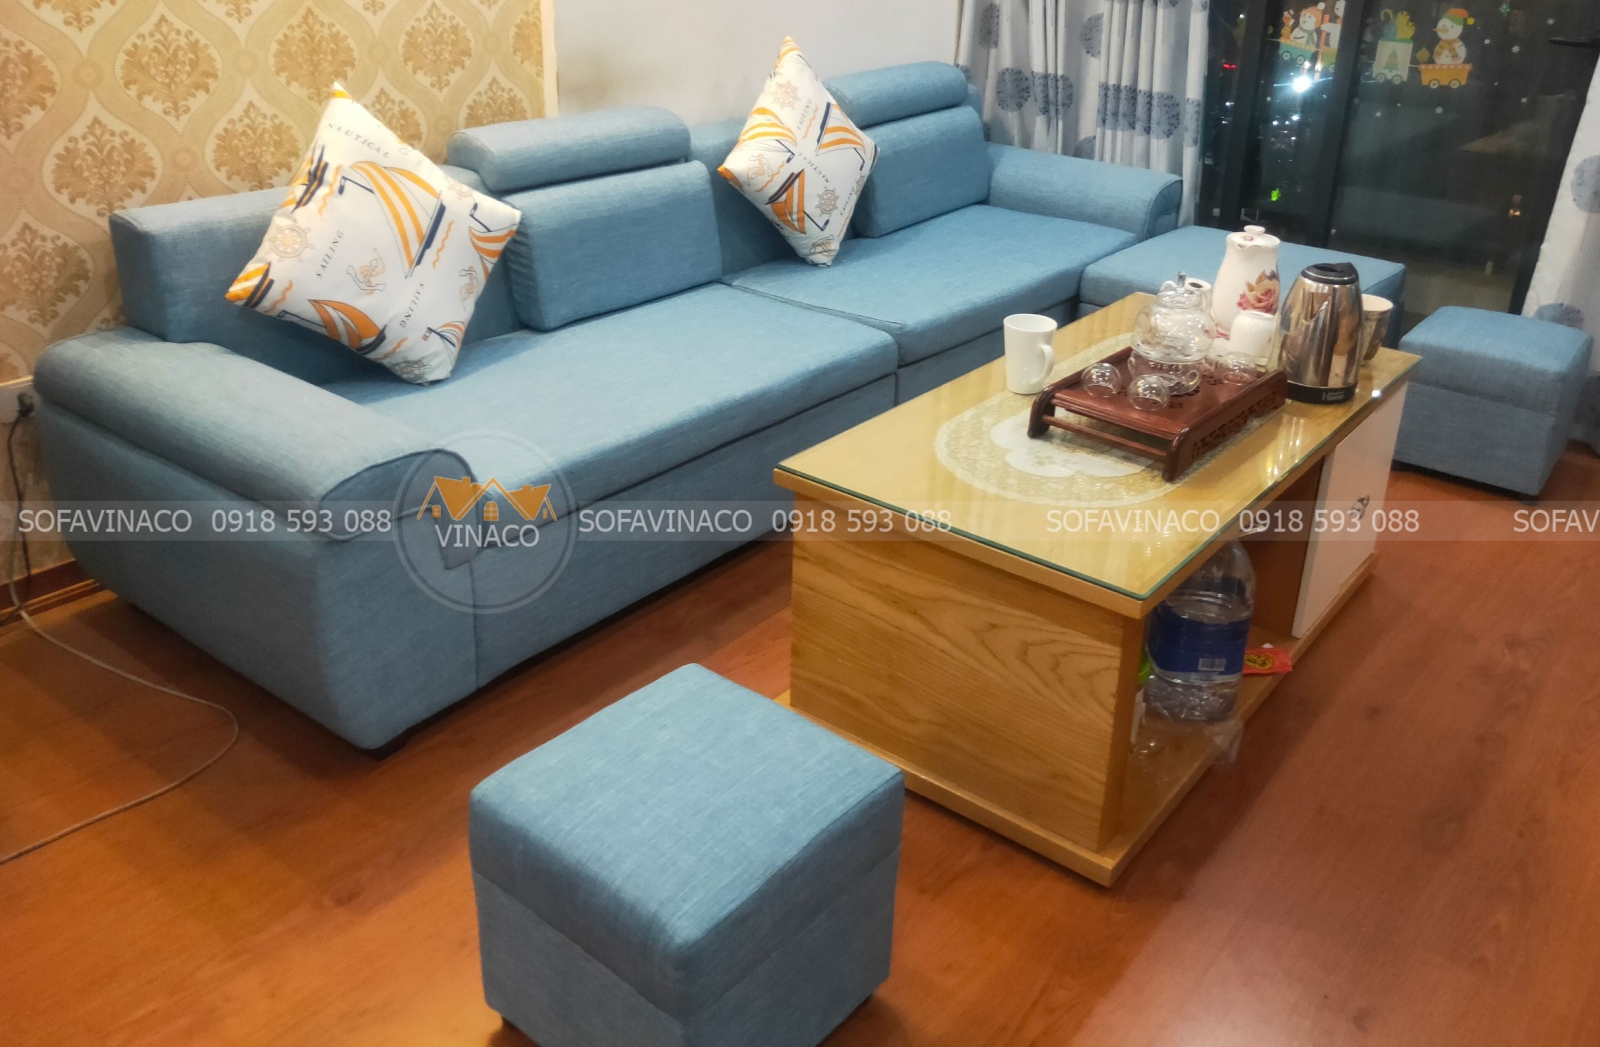 Dịch vụ và quy trình bọc ghế sofa tại Sofavinaco TPHCM